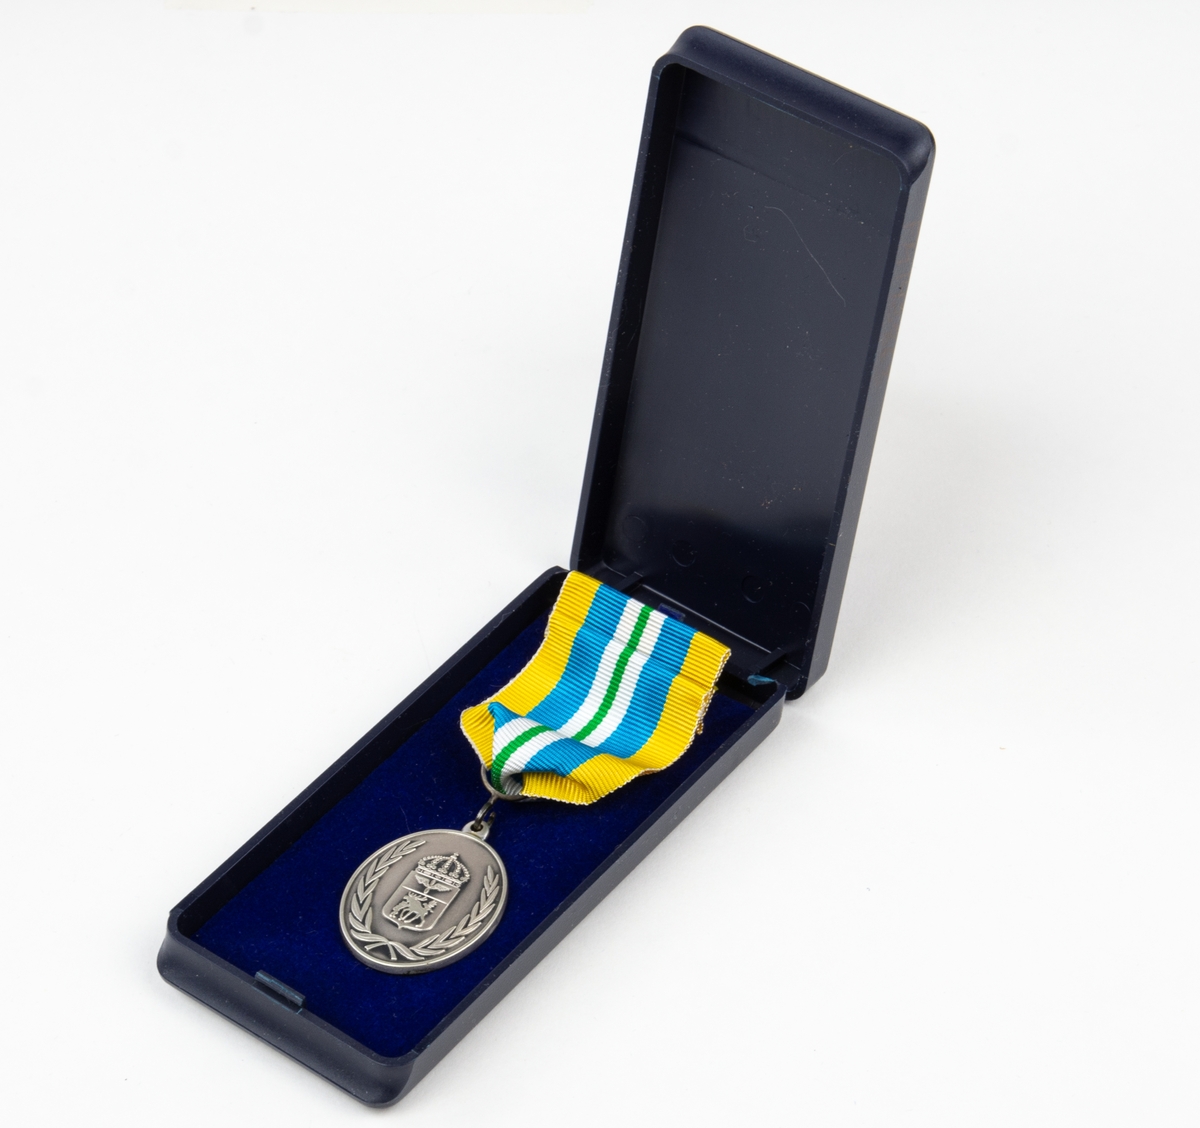 Jämtlands flygflottilj för förtjänstmedalj silver. 1 st medalj, 1 st utmärkelsetecken. Förvaras i originalask.